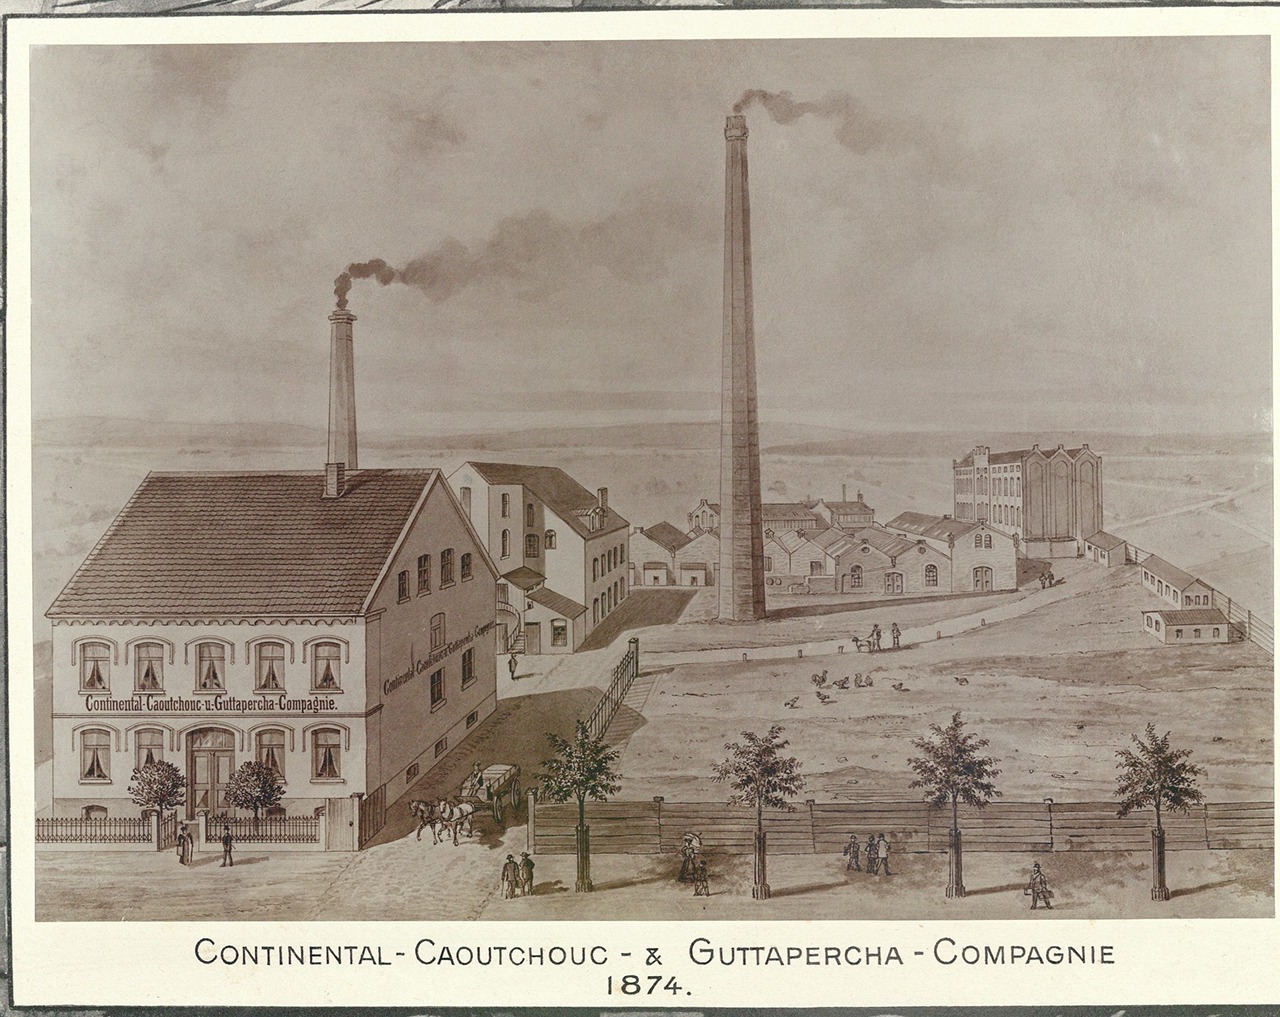 Continental Caoutchouc & Gutta-Percha társaság